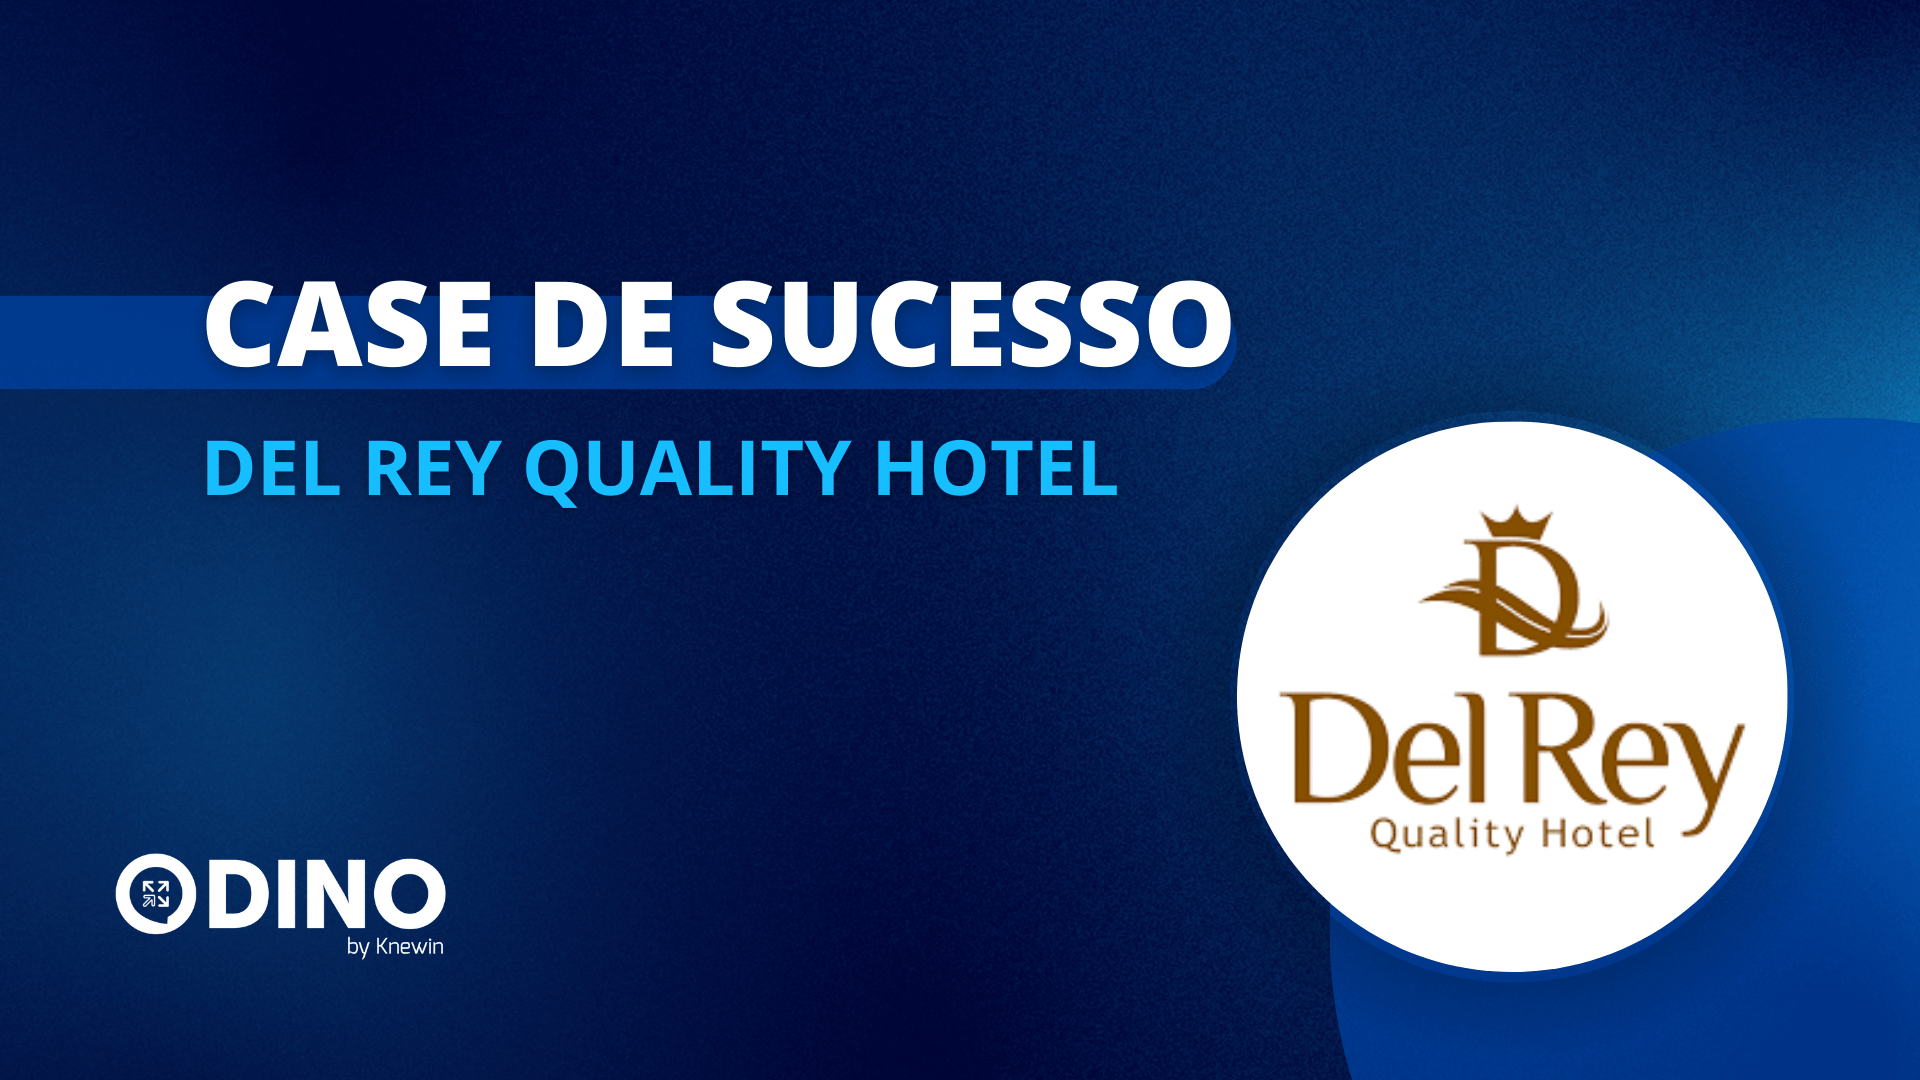 Como o Dino impulsionou os resultados do Del Rey Quality Hotel